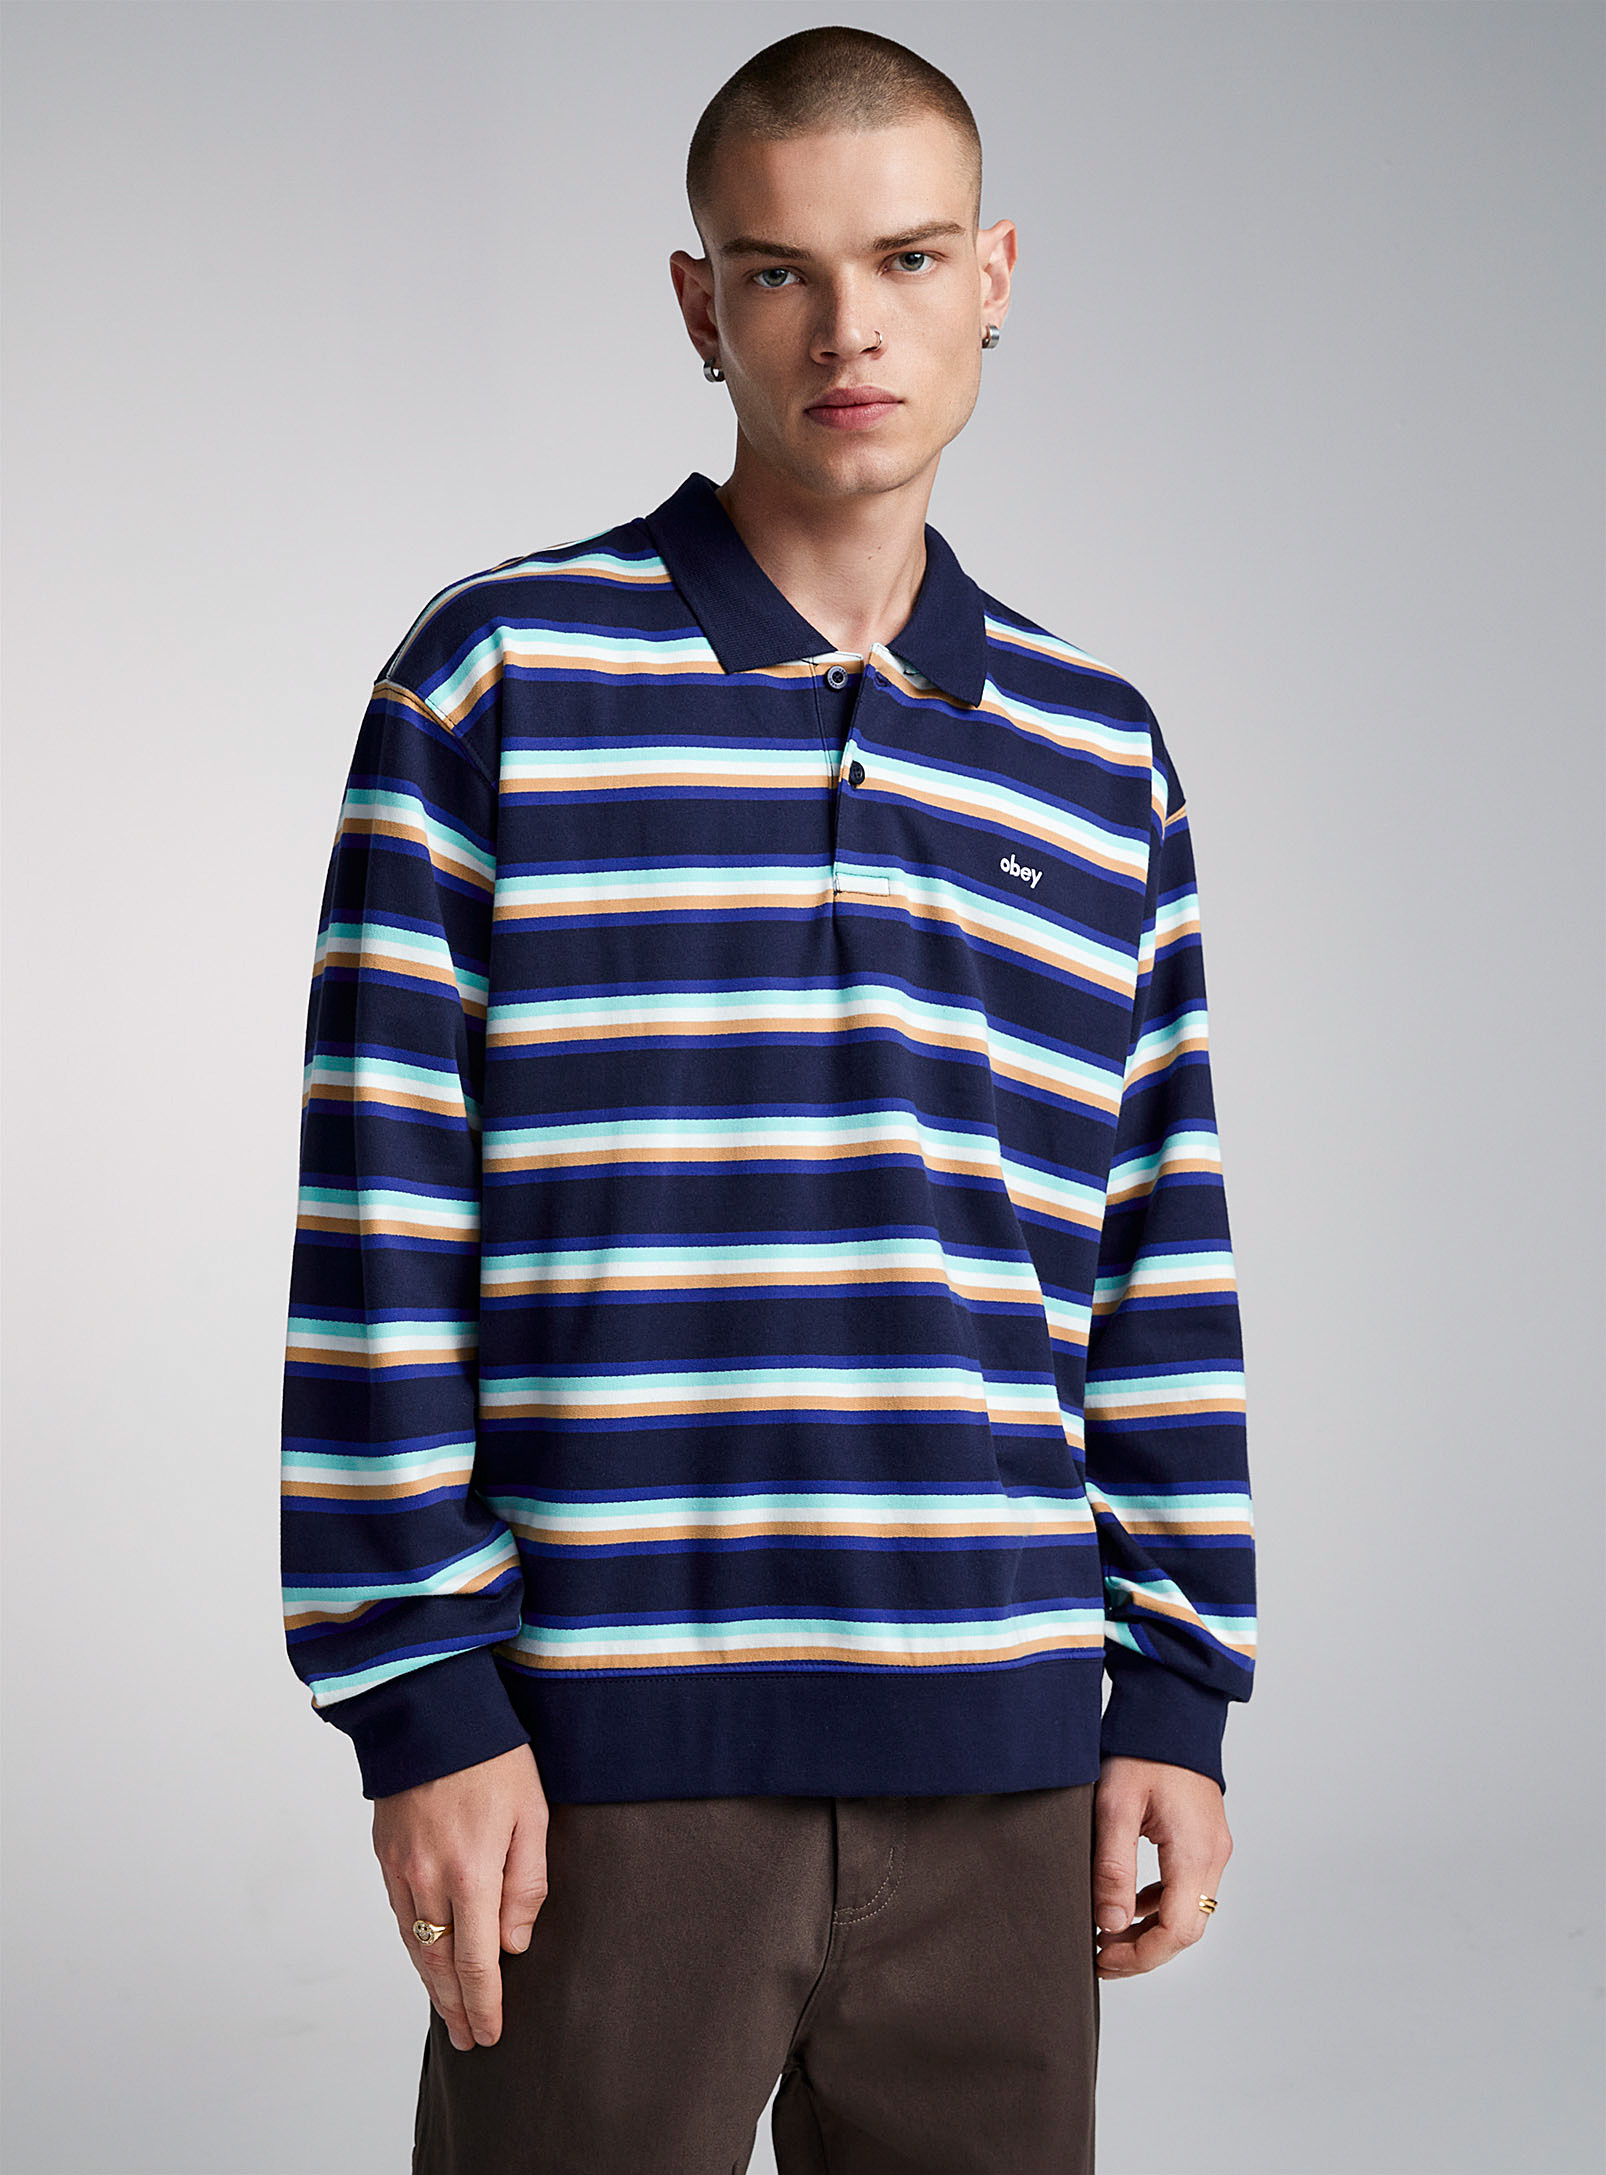 Obey - Men's Colourful stripe Polo Shirt